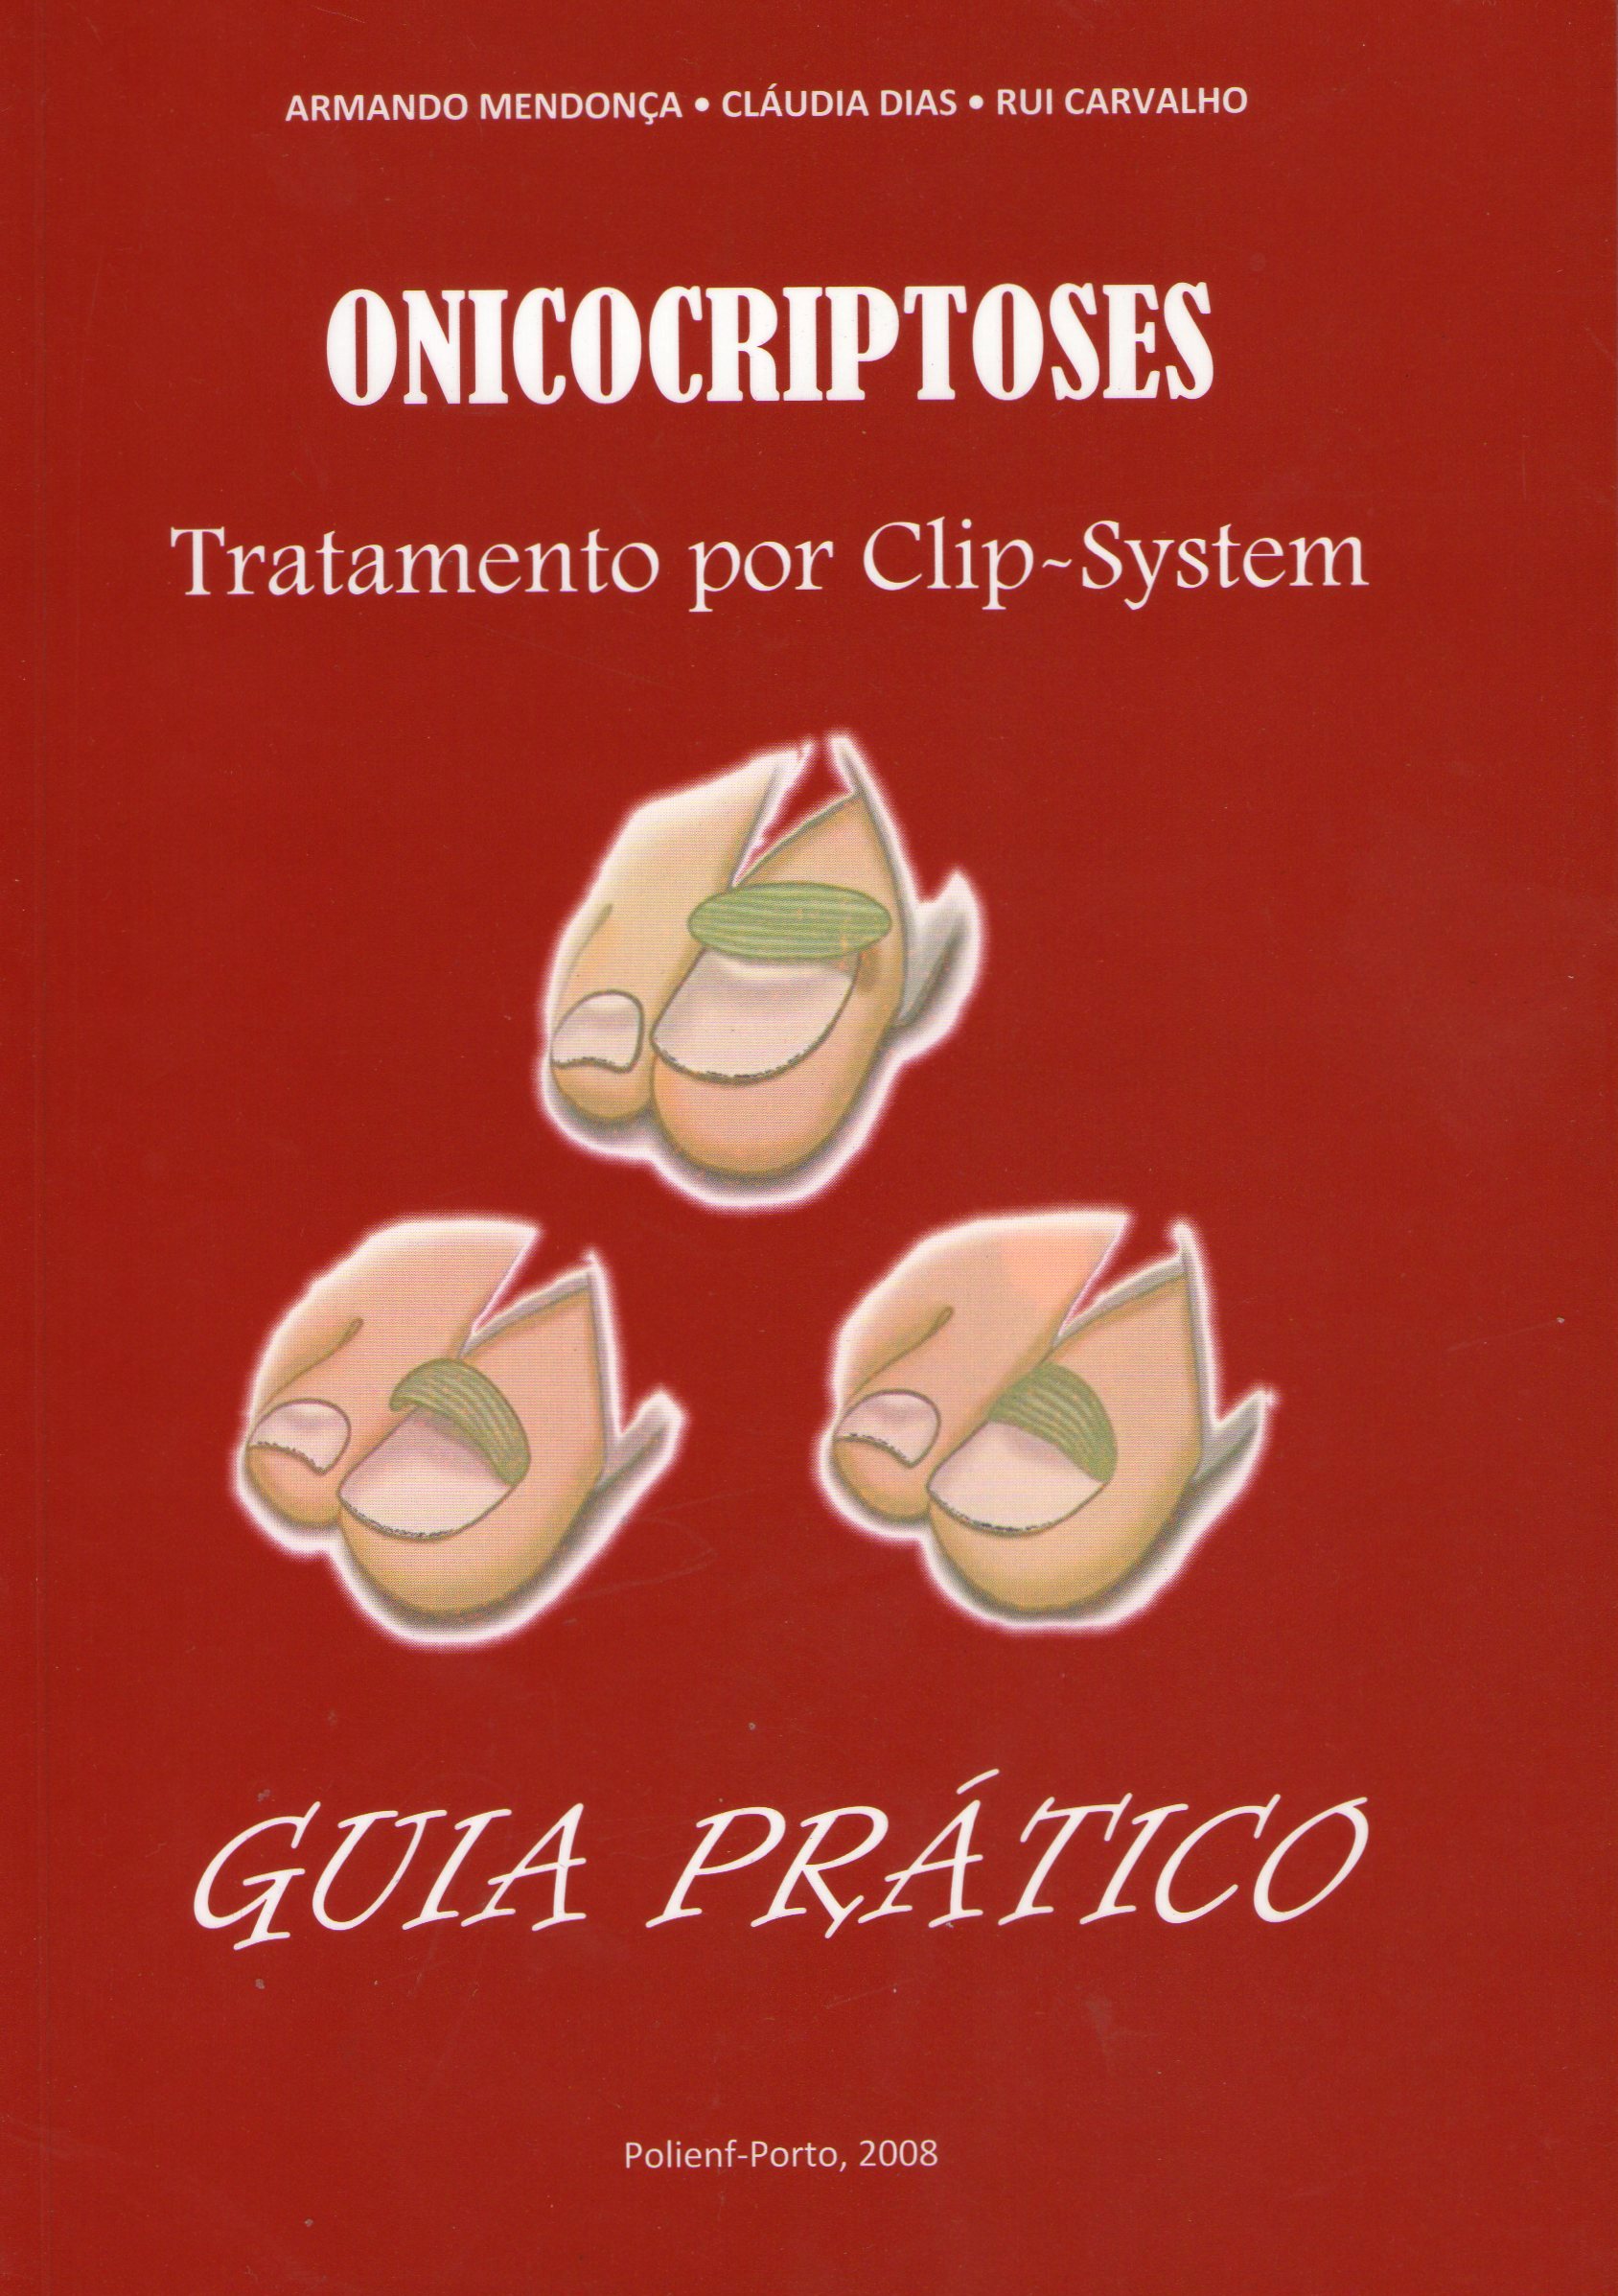 Onicocriptoses: Tratamento por Clip-System - Guia Prático